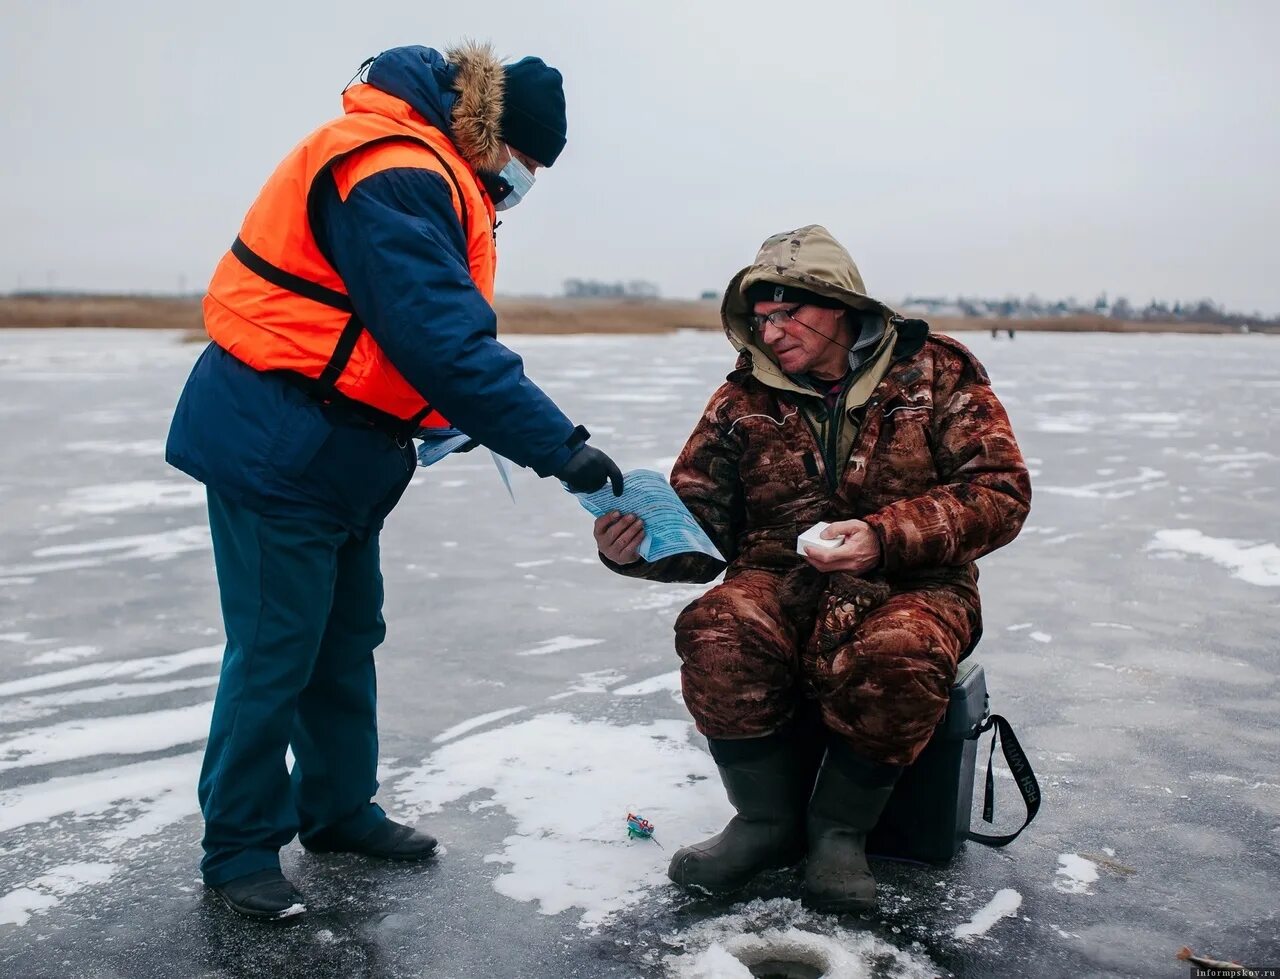 Люди большой реки. Рыбаки на льду. Рыбаки на тонком льду. Лед. Выход на лед опасен рыбаки.